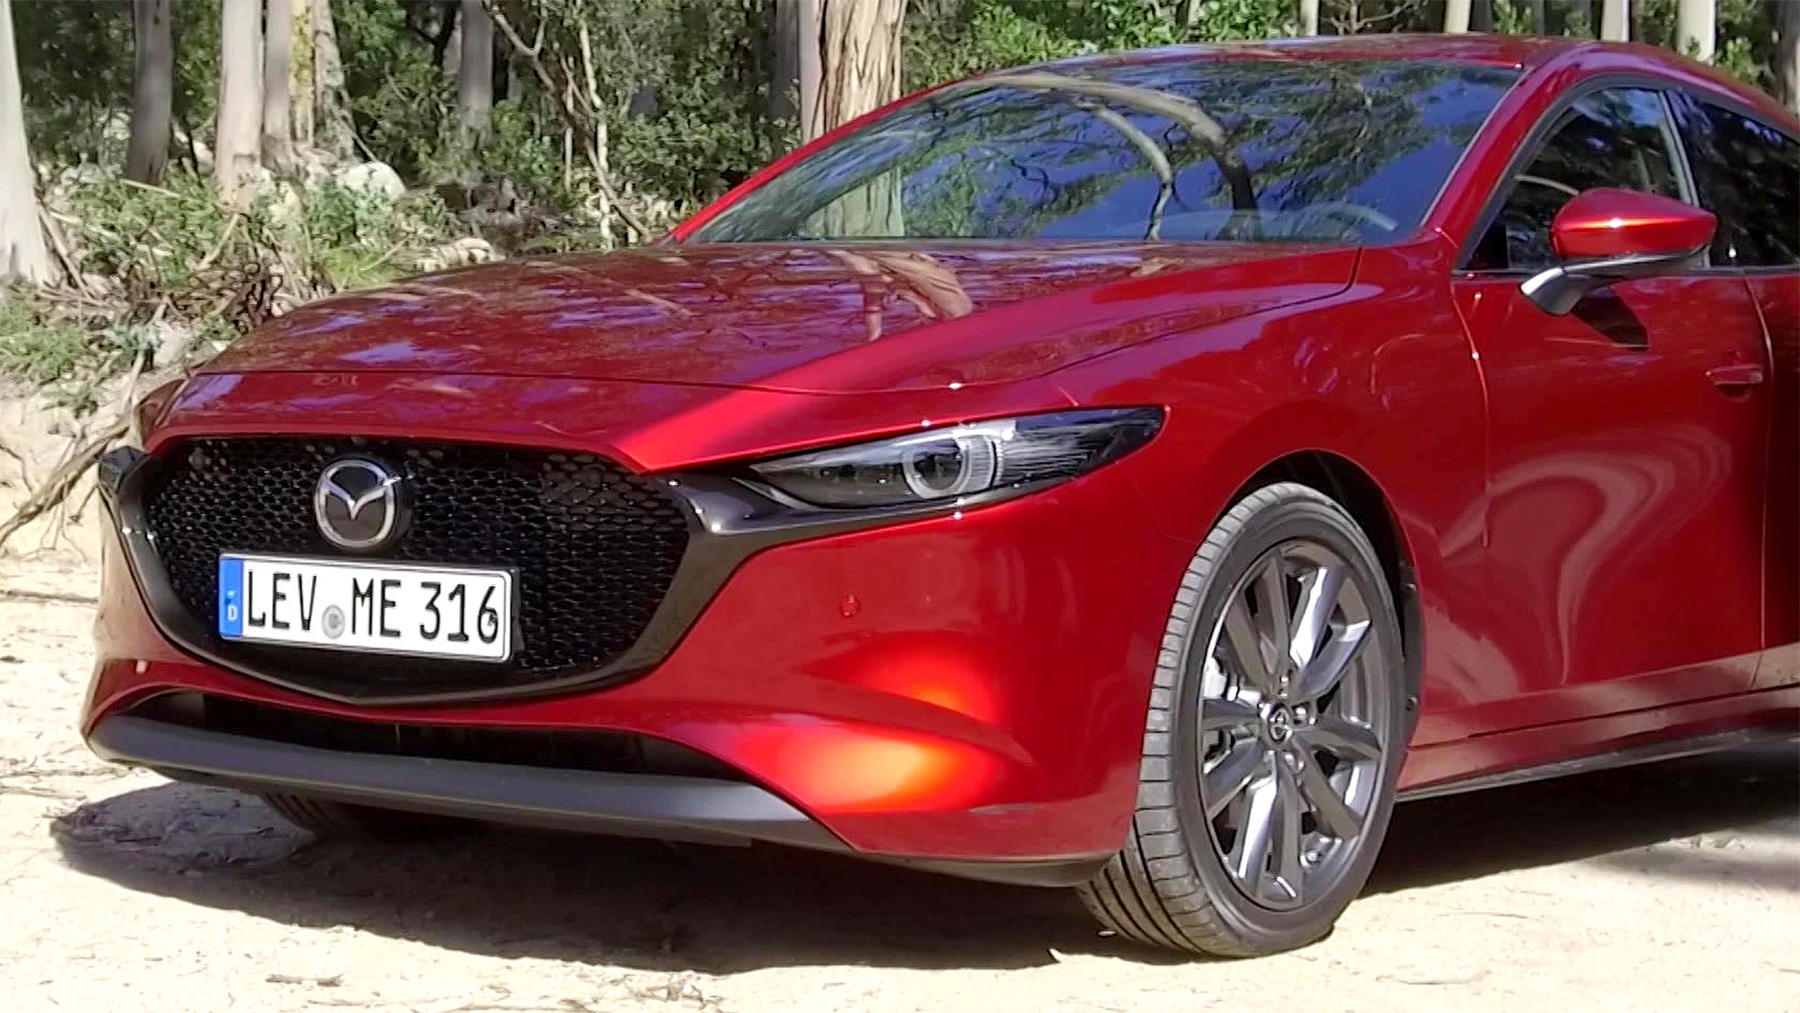 Thema heute u.a.: Der neue Mazda3